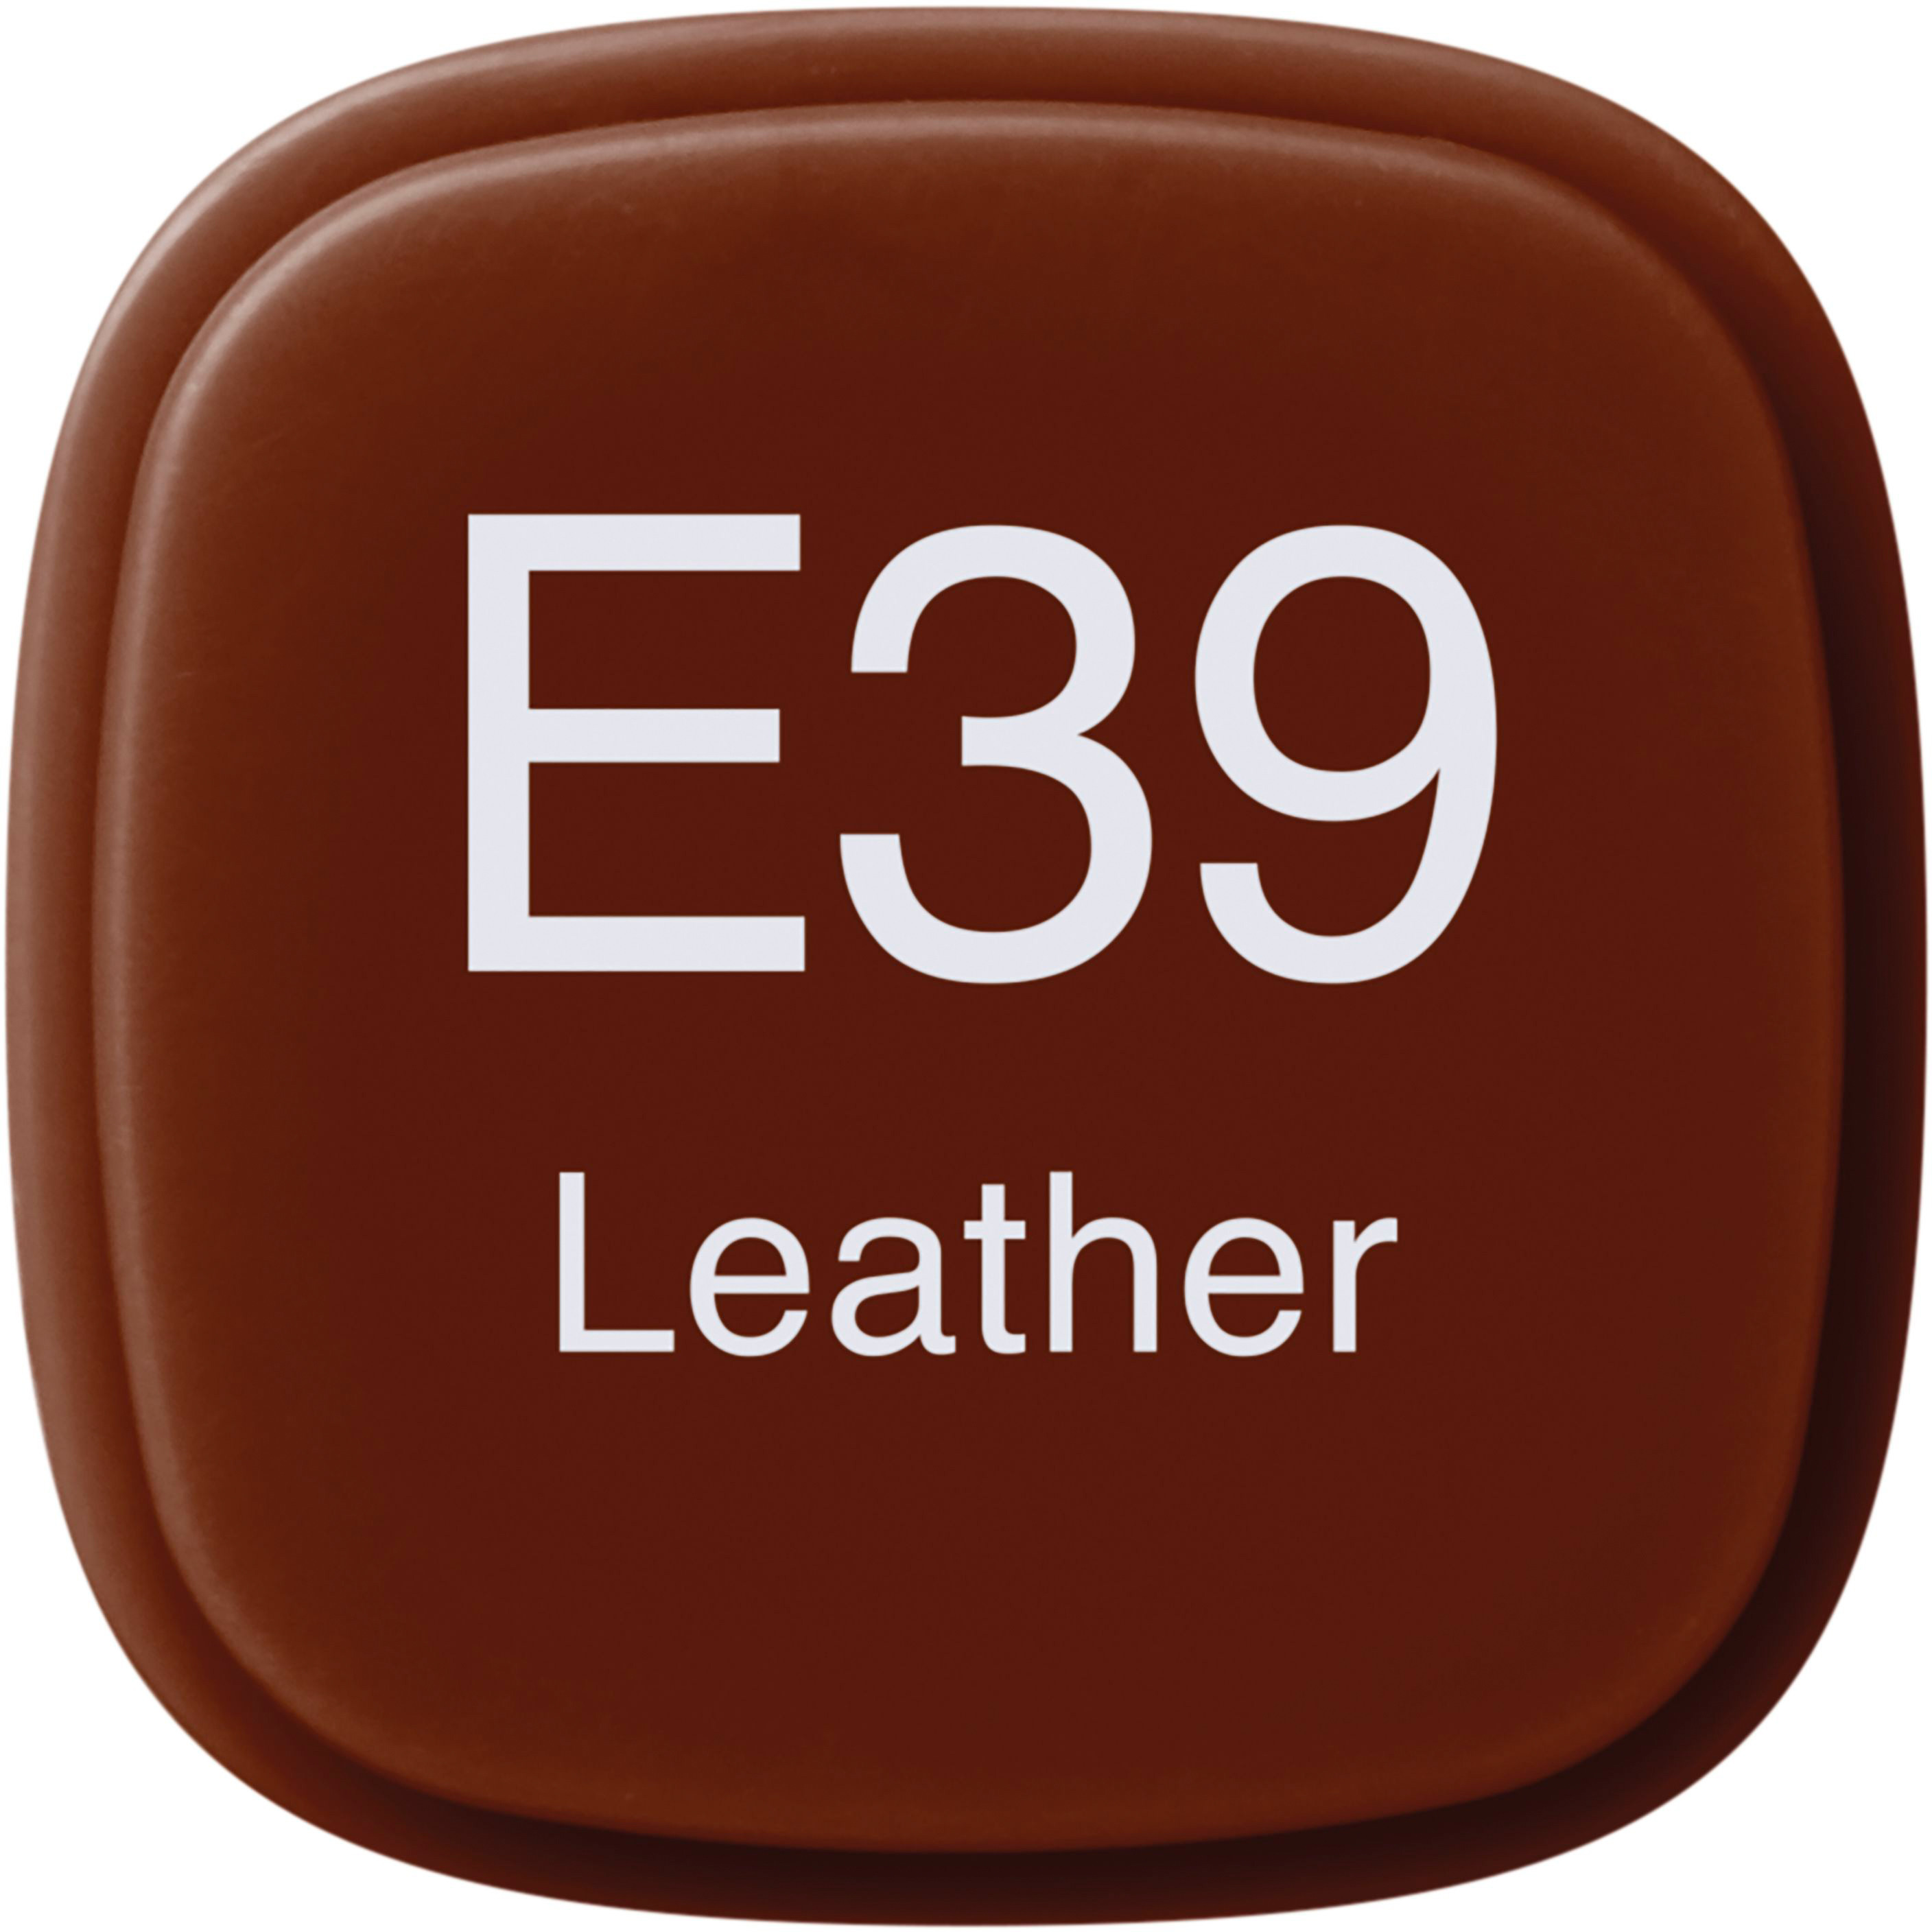 COPIC Marker Classic 20075233 E39 - Leather